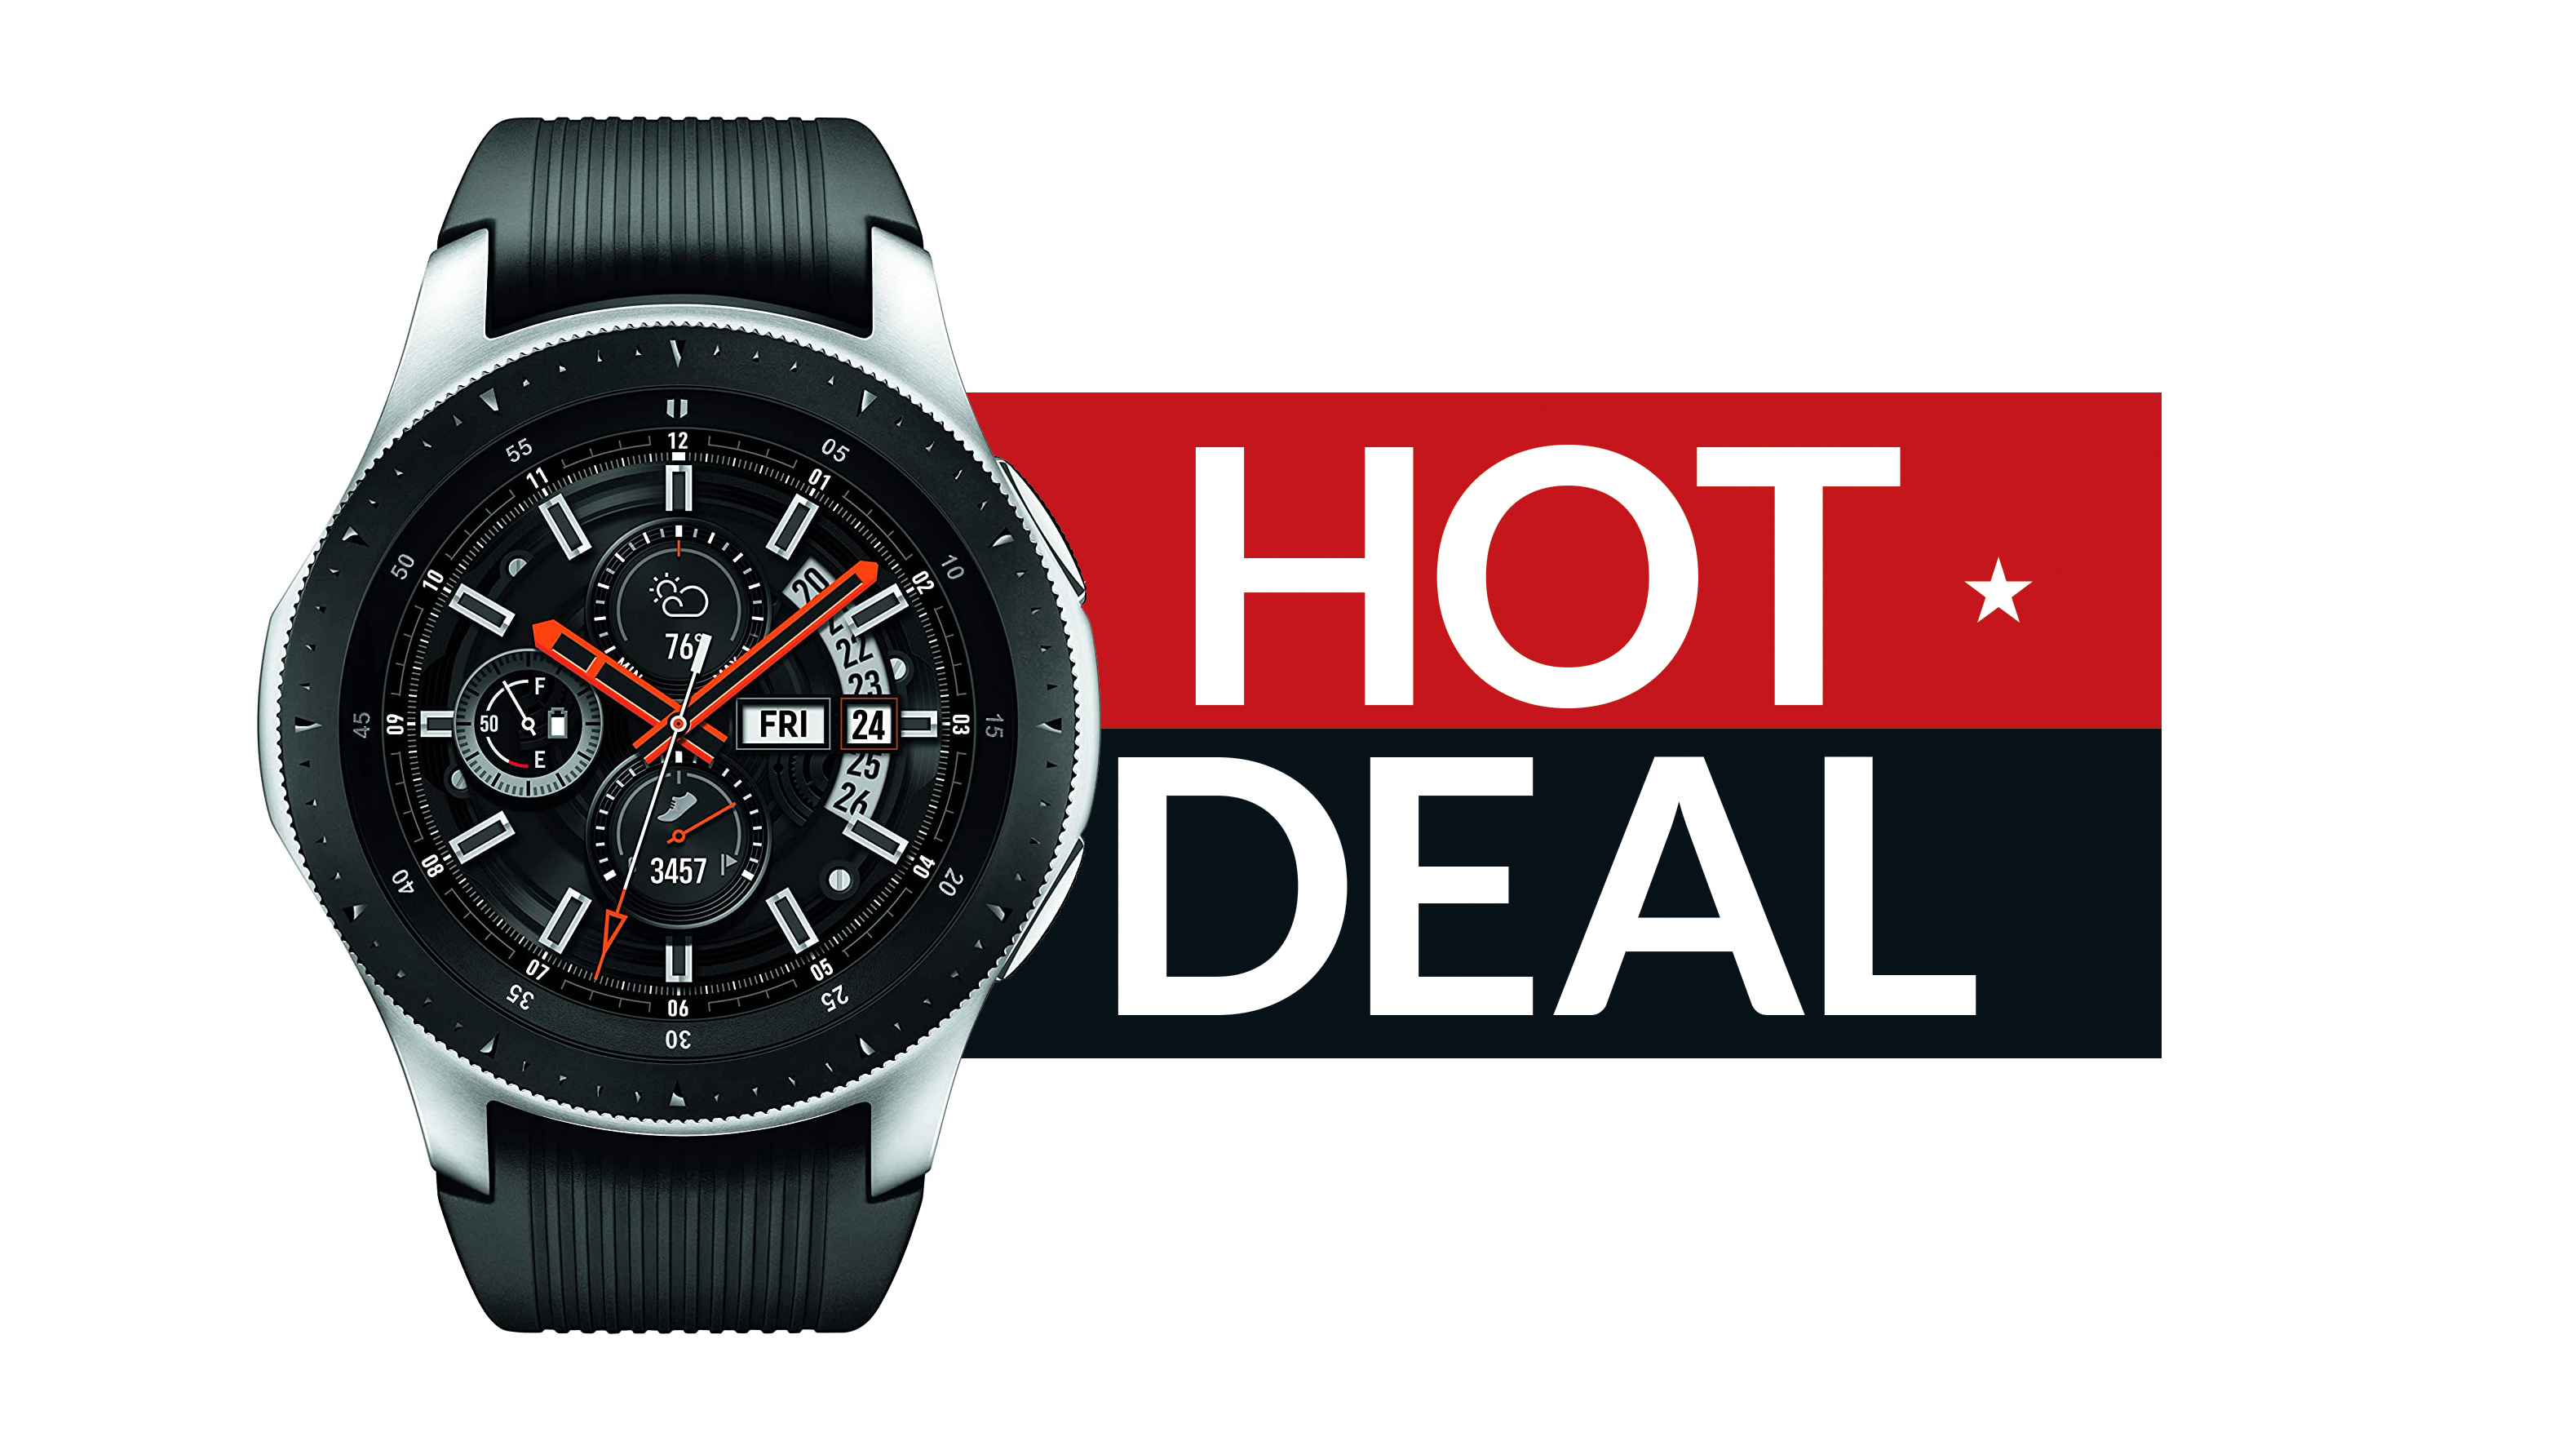 Best Samsung Galaxy Watch deals for 